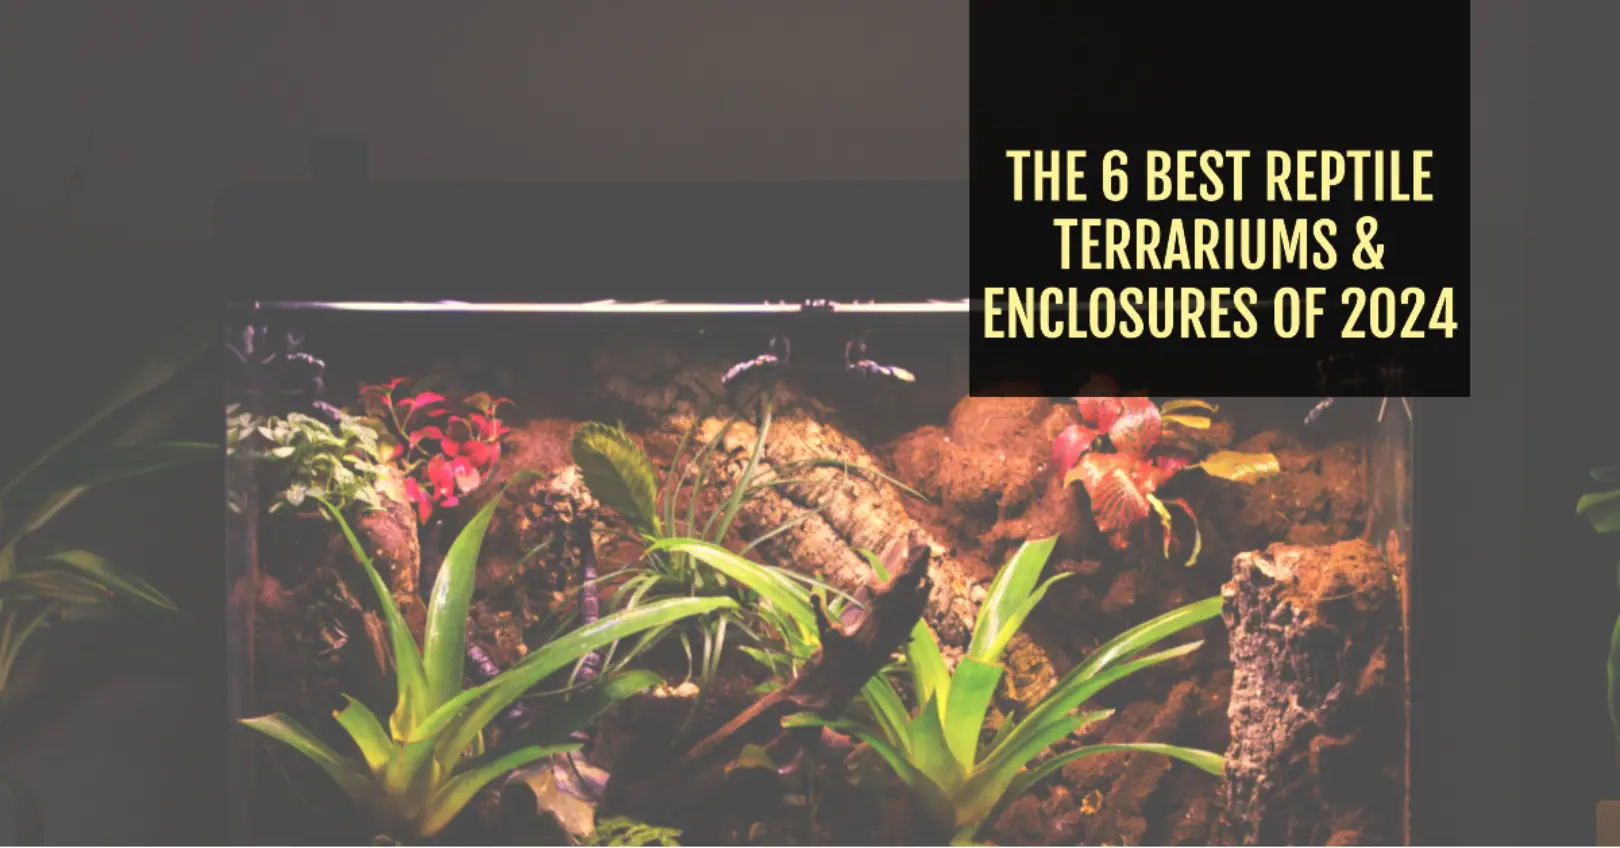 The 6 Best Reptile Terrariums & Enclosures of 2024